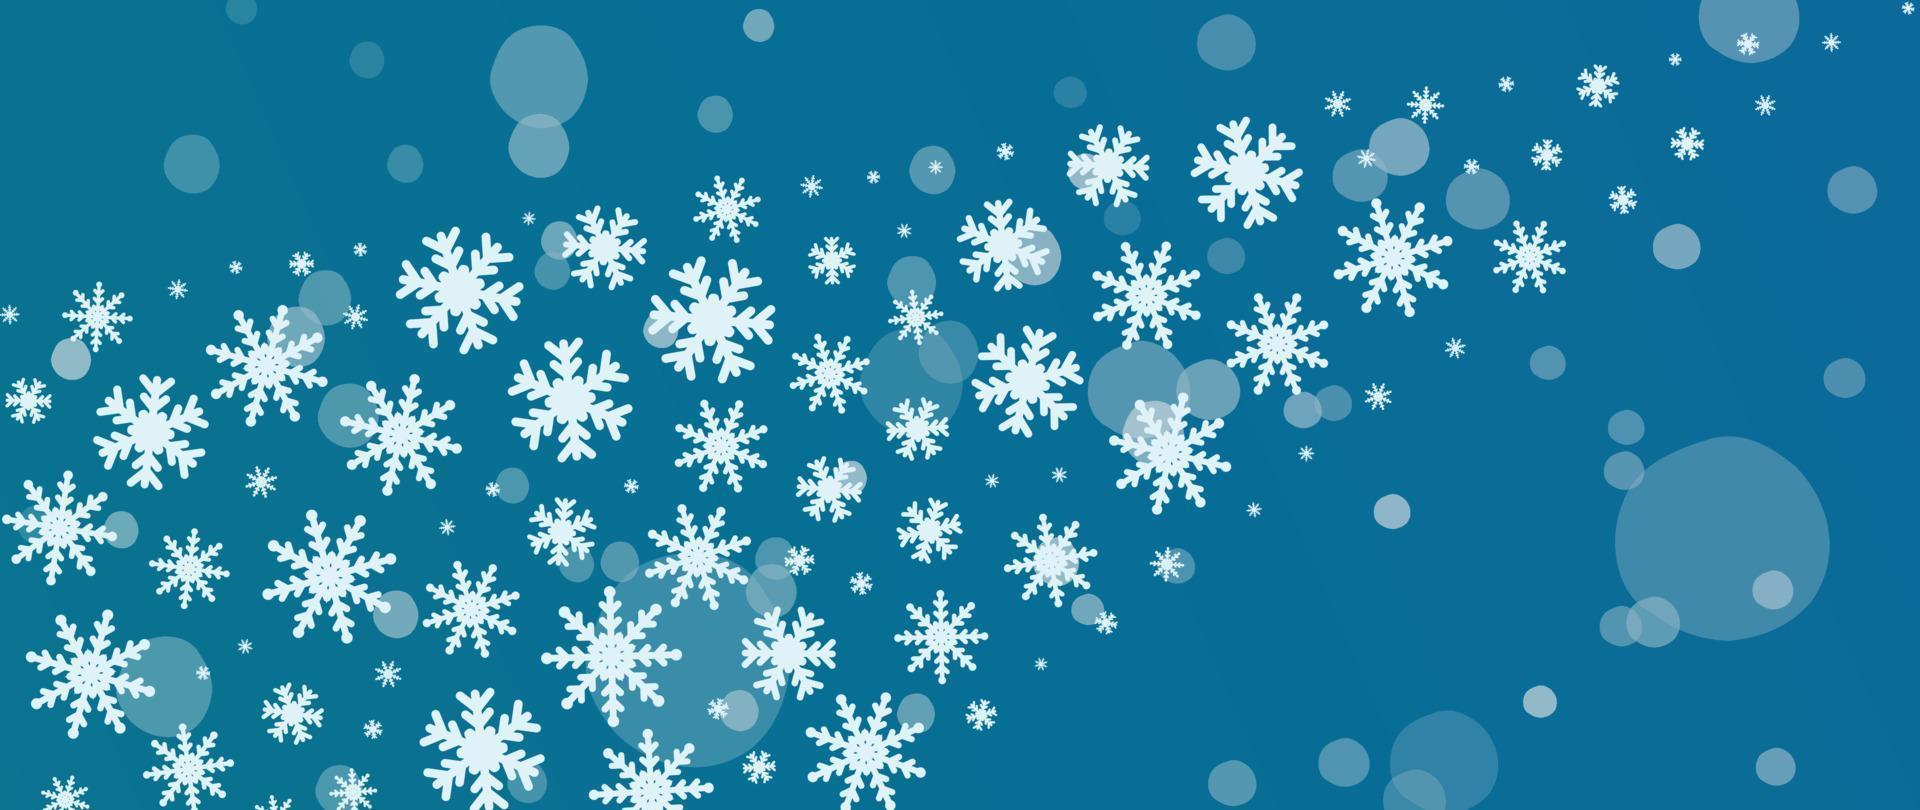 elegant winter sneeuwvlok achtergrond vector illustratie. luxe decoratief sneeuwvlok en sneeuwval Aan bokeh blauw achtergrond. ontwerp geschikt voor uitnodiging kaart, groet, behang, poster, spandoek.